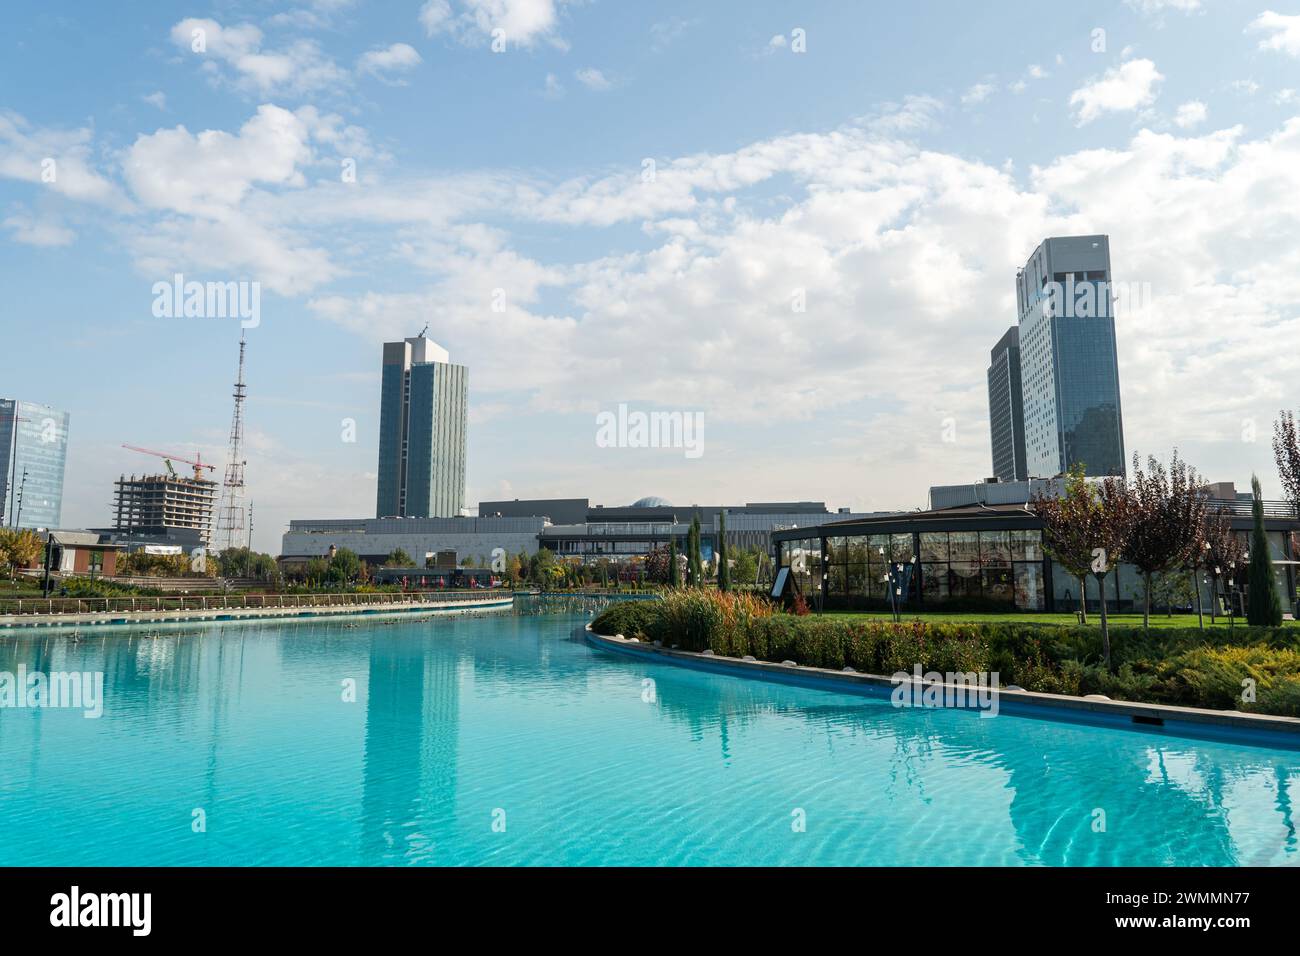 Vue imprenable sur les bâtiments contemporains reflétés dans la piscine du parc municipal de Tachkent à Tachkent, Ouzbékistan. park est un lieu de rassemblement récréatif populaire Banque D'Images